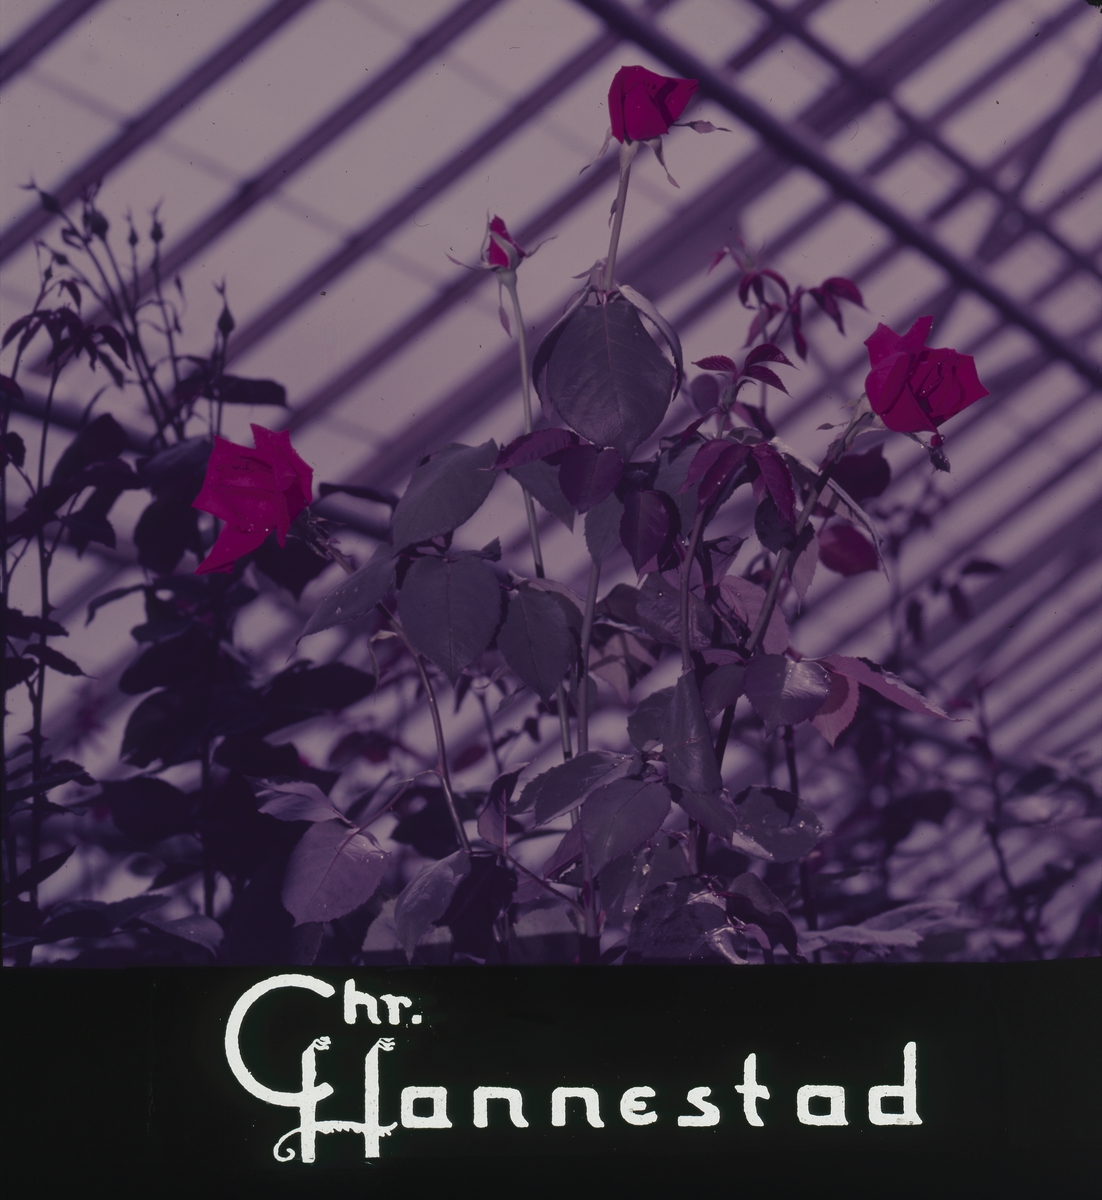 Røde roser i drivhus og Chr. Hannestad sin logo. Kinoreklame fra 1950-1960-årene